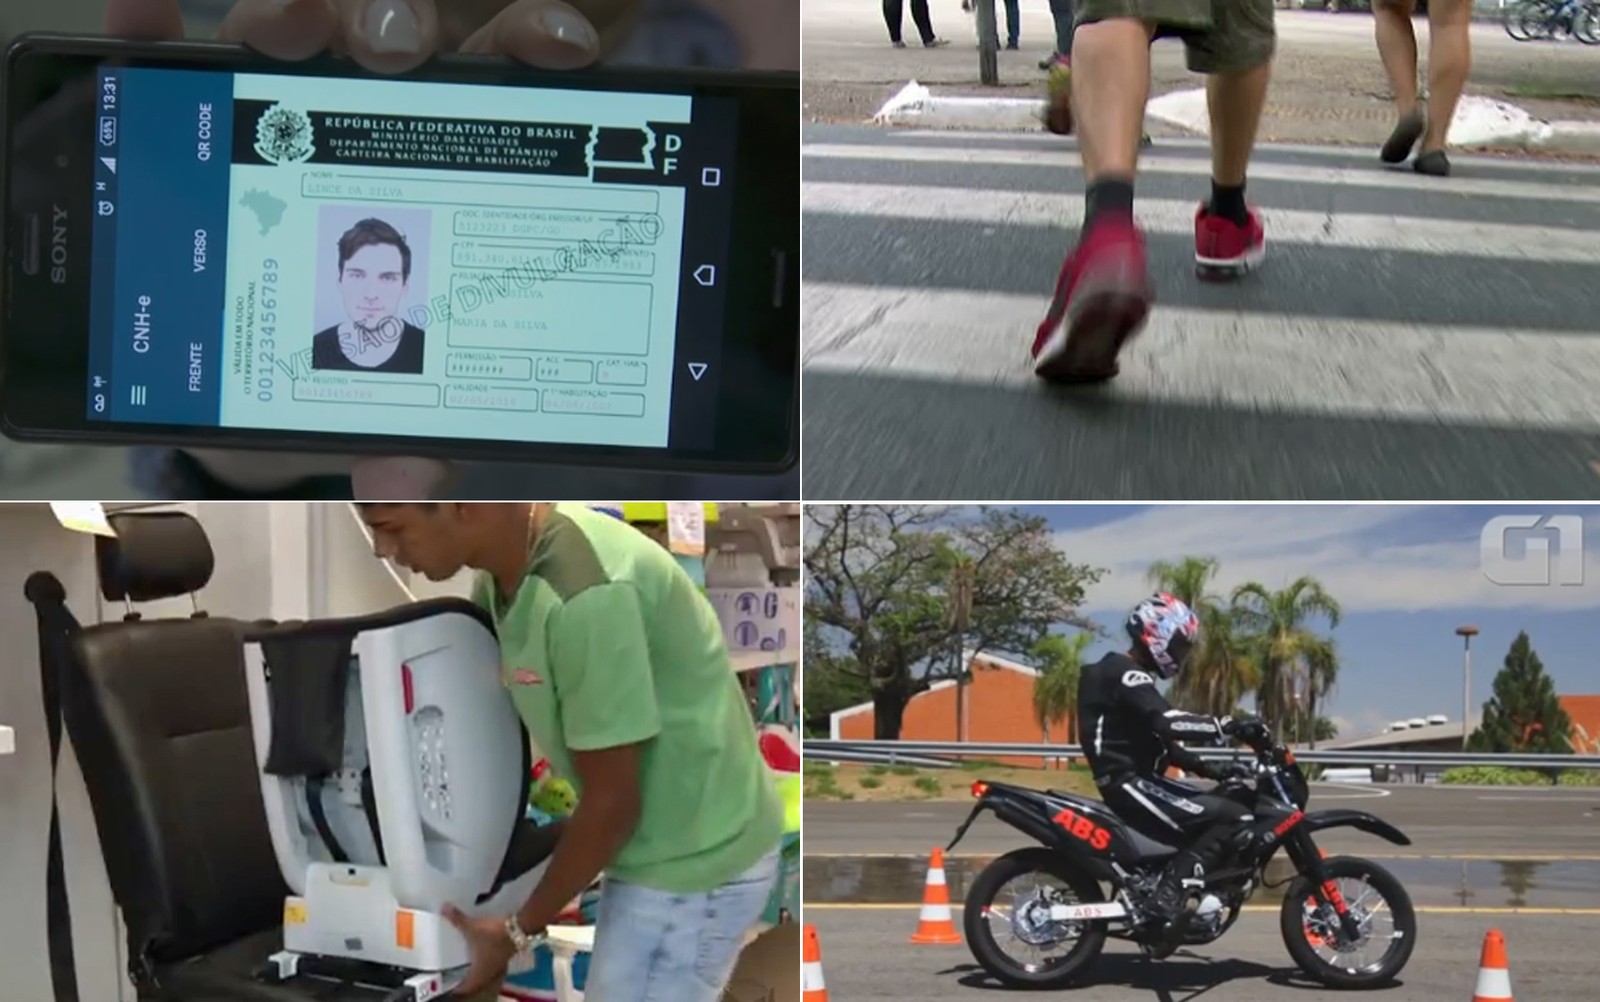 Multa para pedestre e documentos digitais: veja o que muda na lei de trânsito em 2018